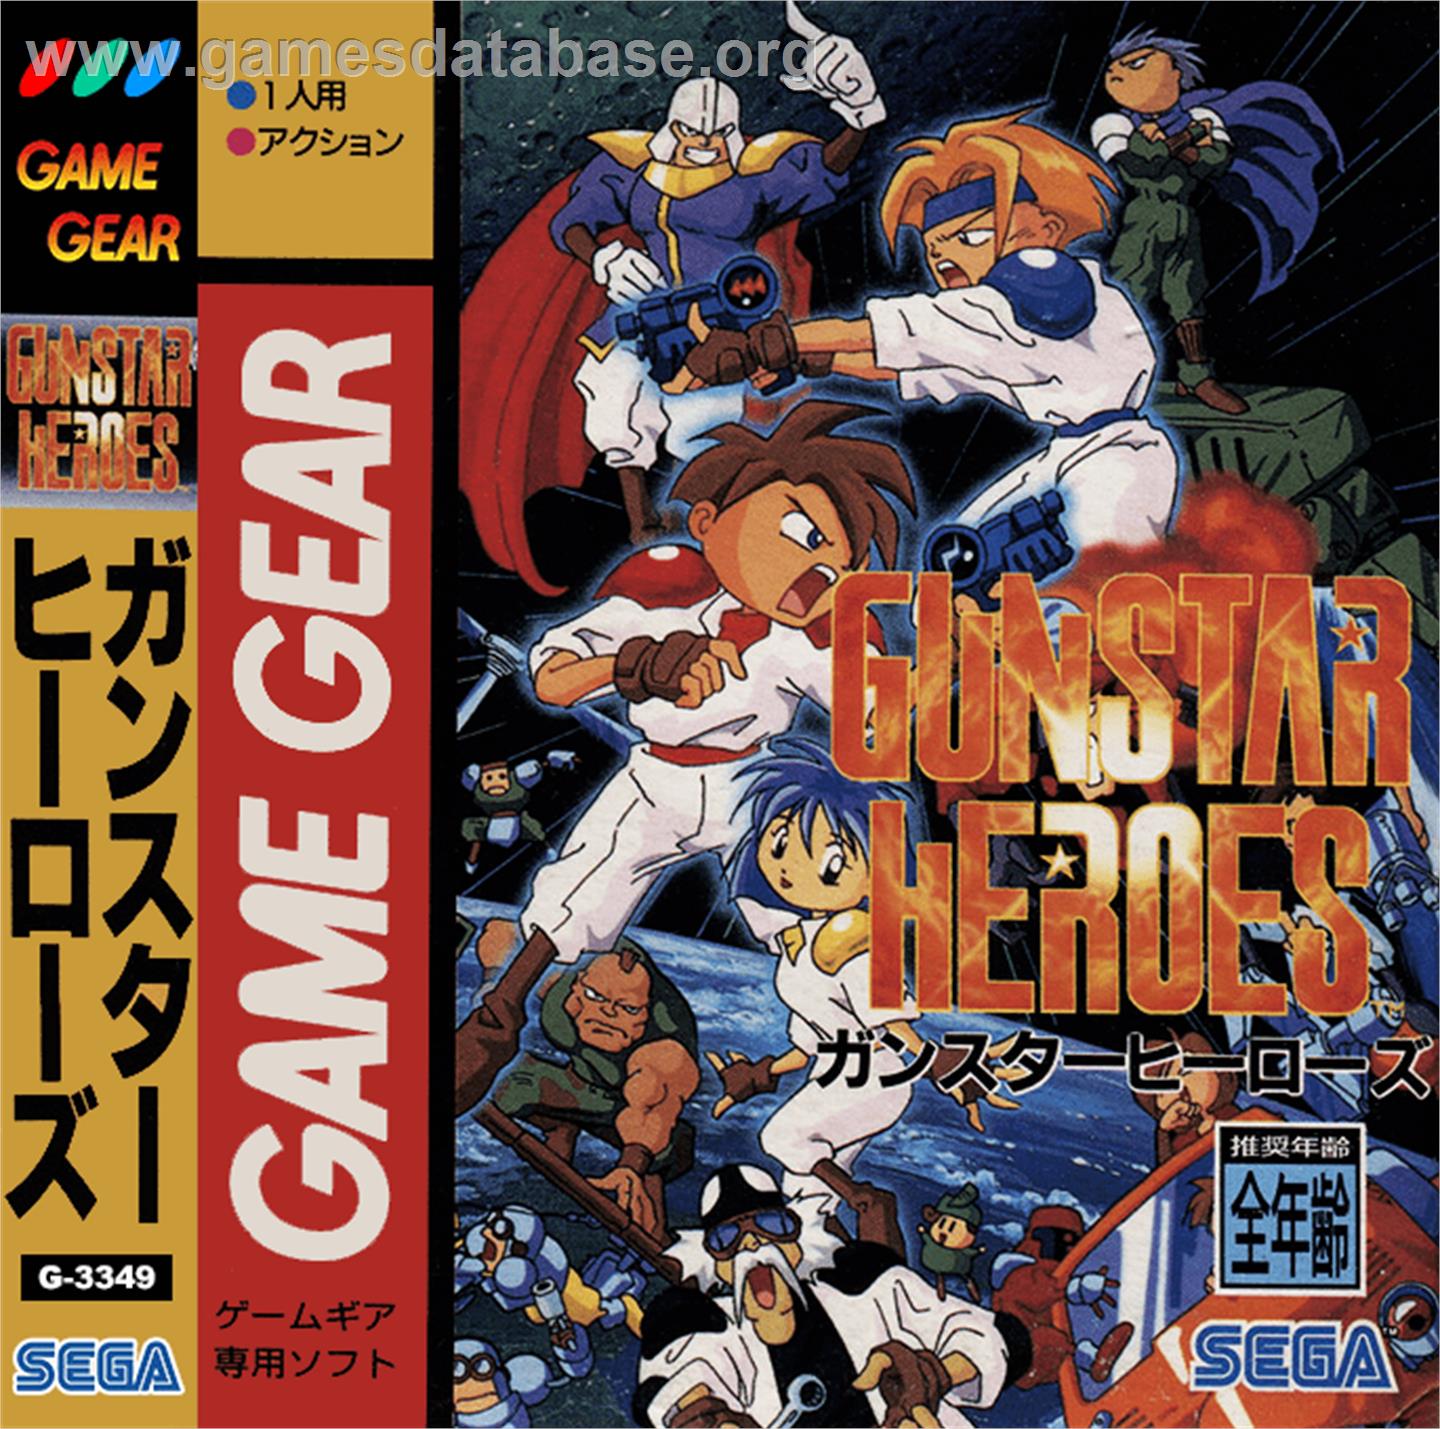 Gunstar Heroes - Sega Game Gear - Artwork - Box